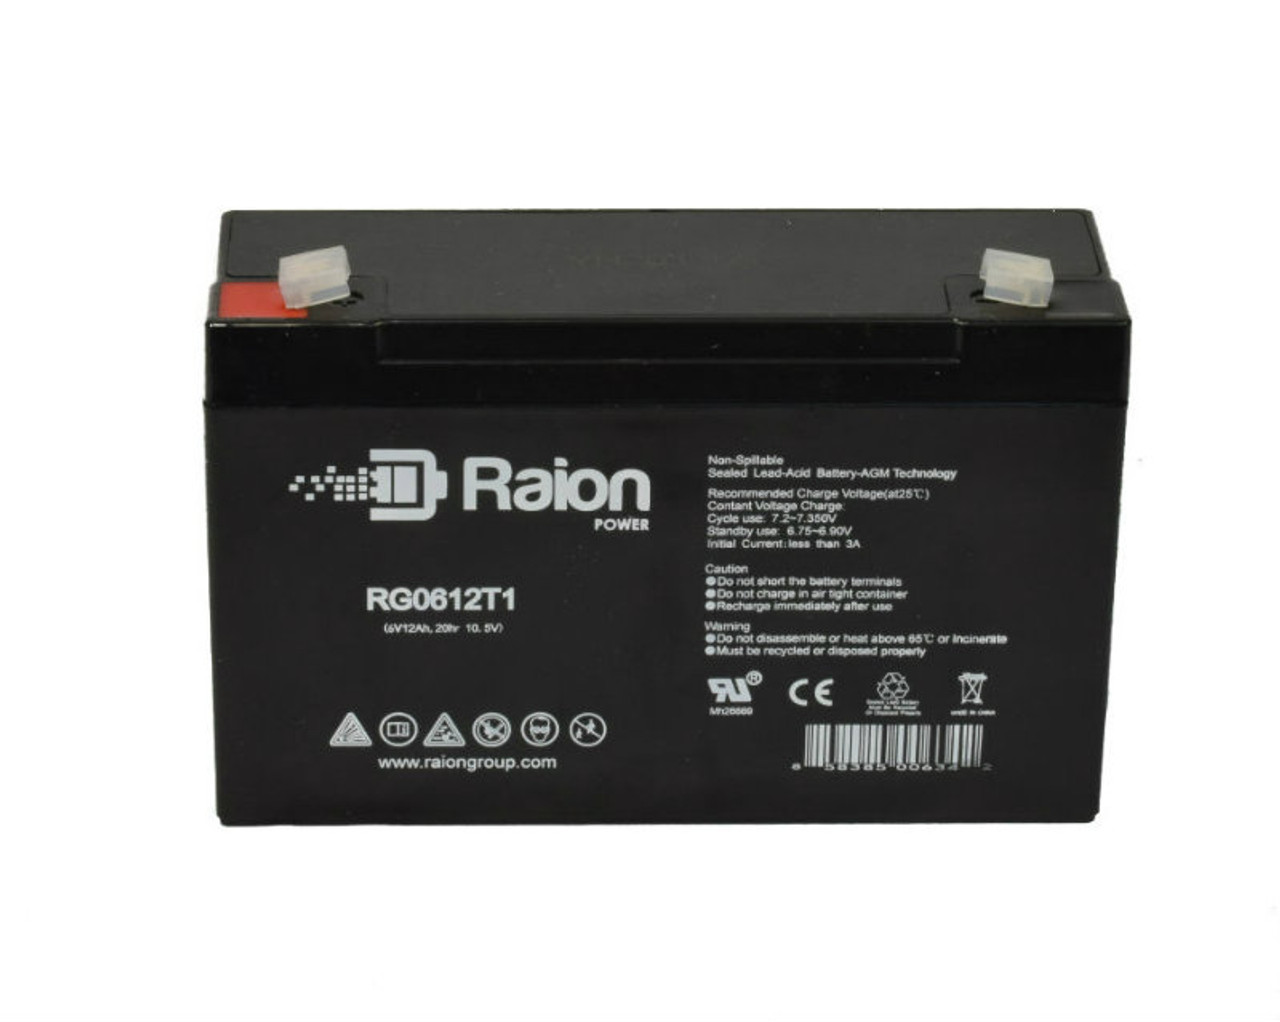 Raion Power RG06120T1 SLA Battery for Emergi-Lite 12DSE54